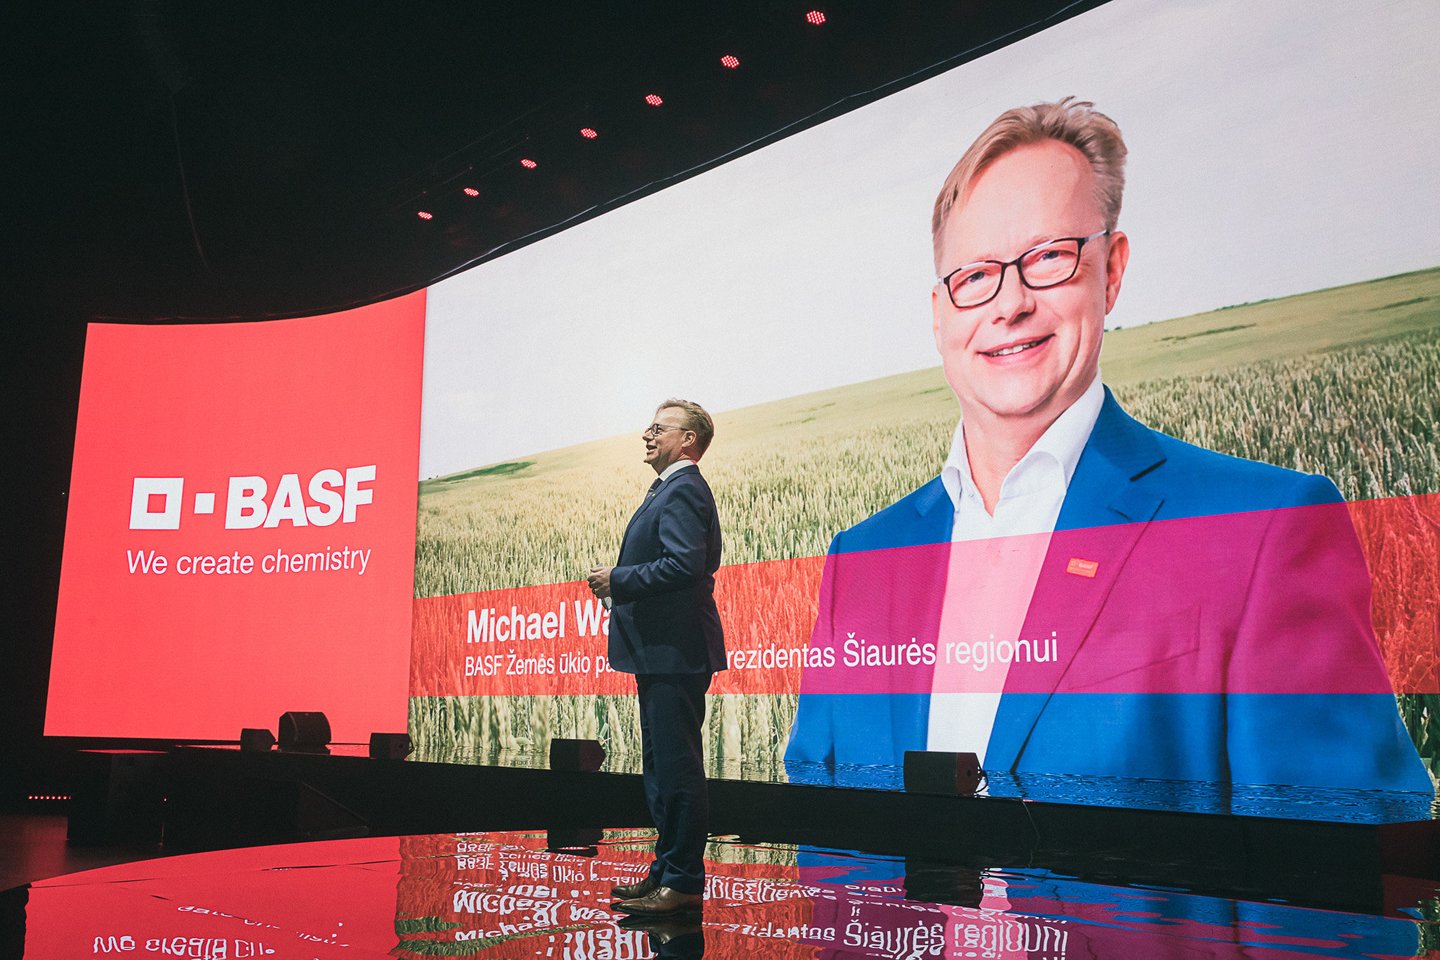  Michael Wagner- BASF Žemės ūkio padalinio viceprezidentas Šiaurės regionui.<br> BASF nuotr.